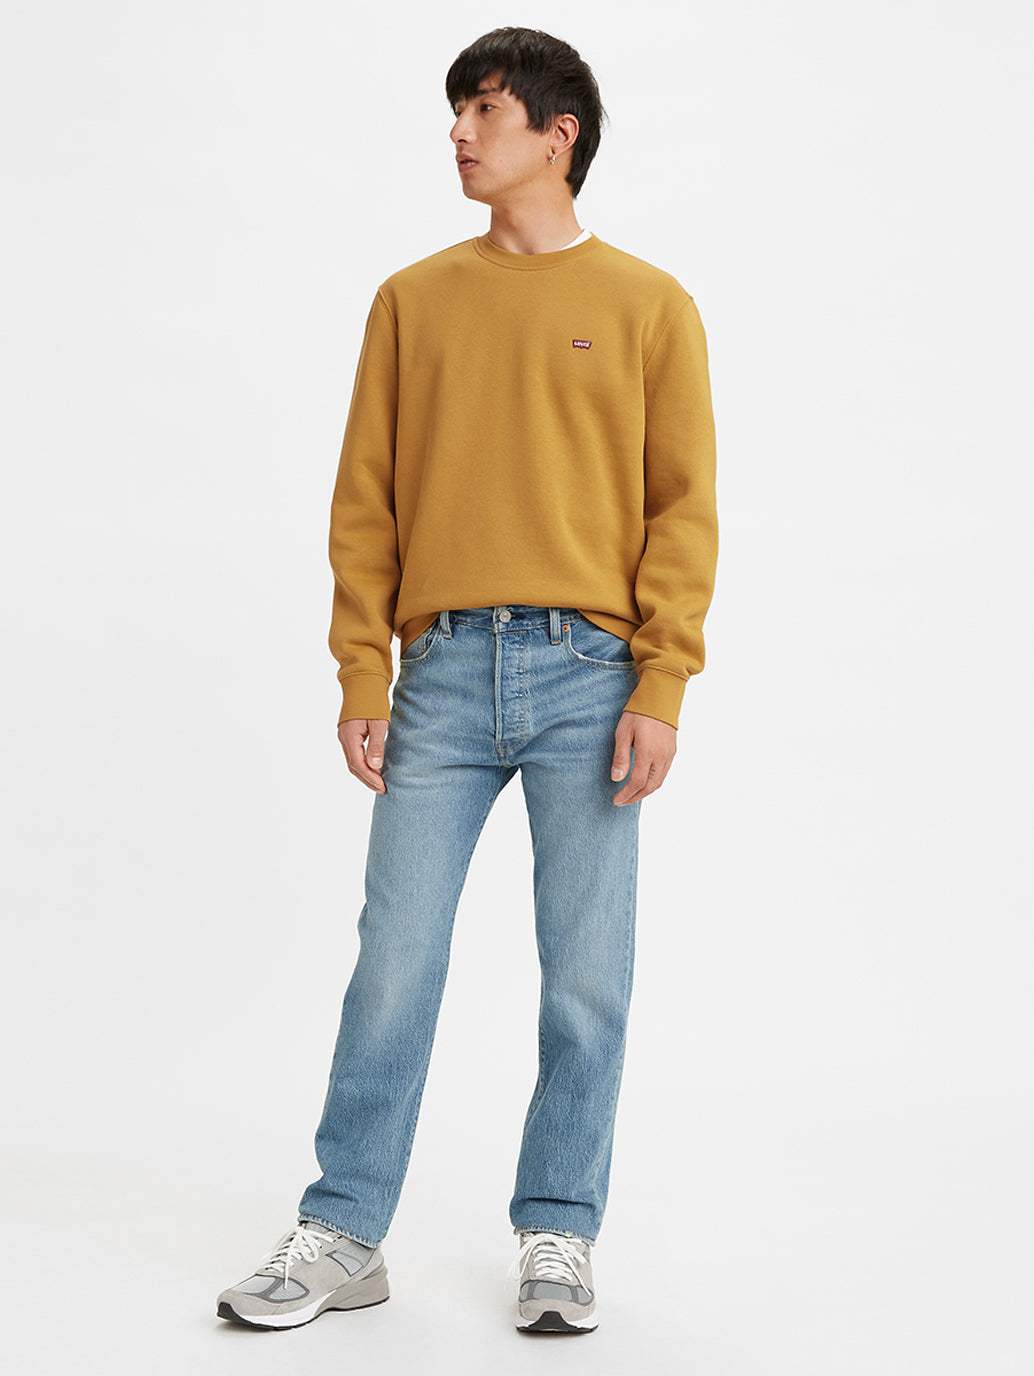 Men's 501 Regular Fit Jeans